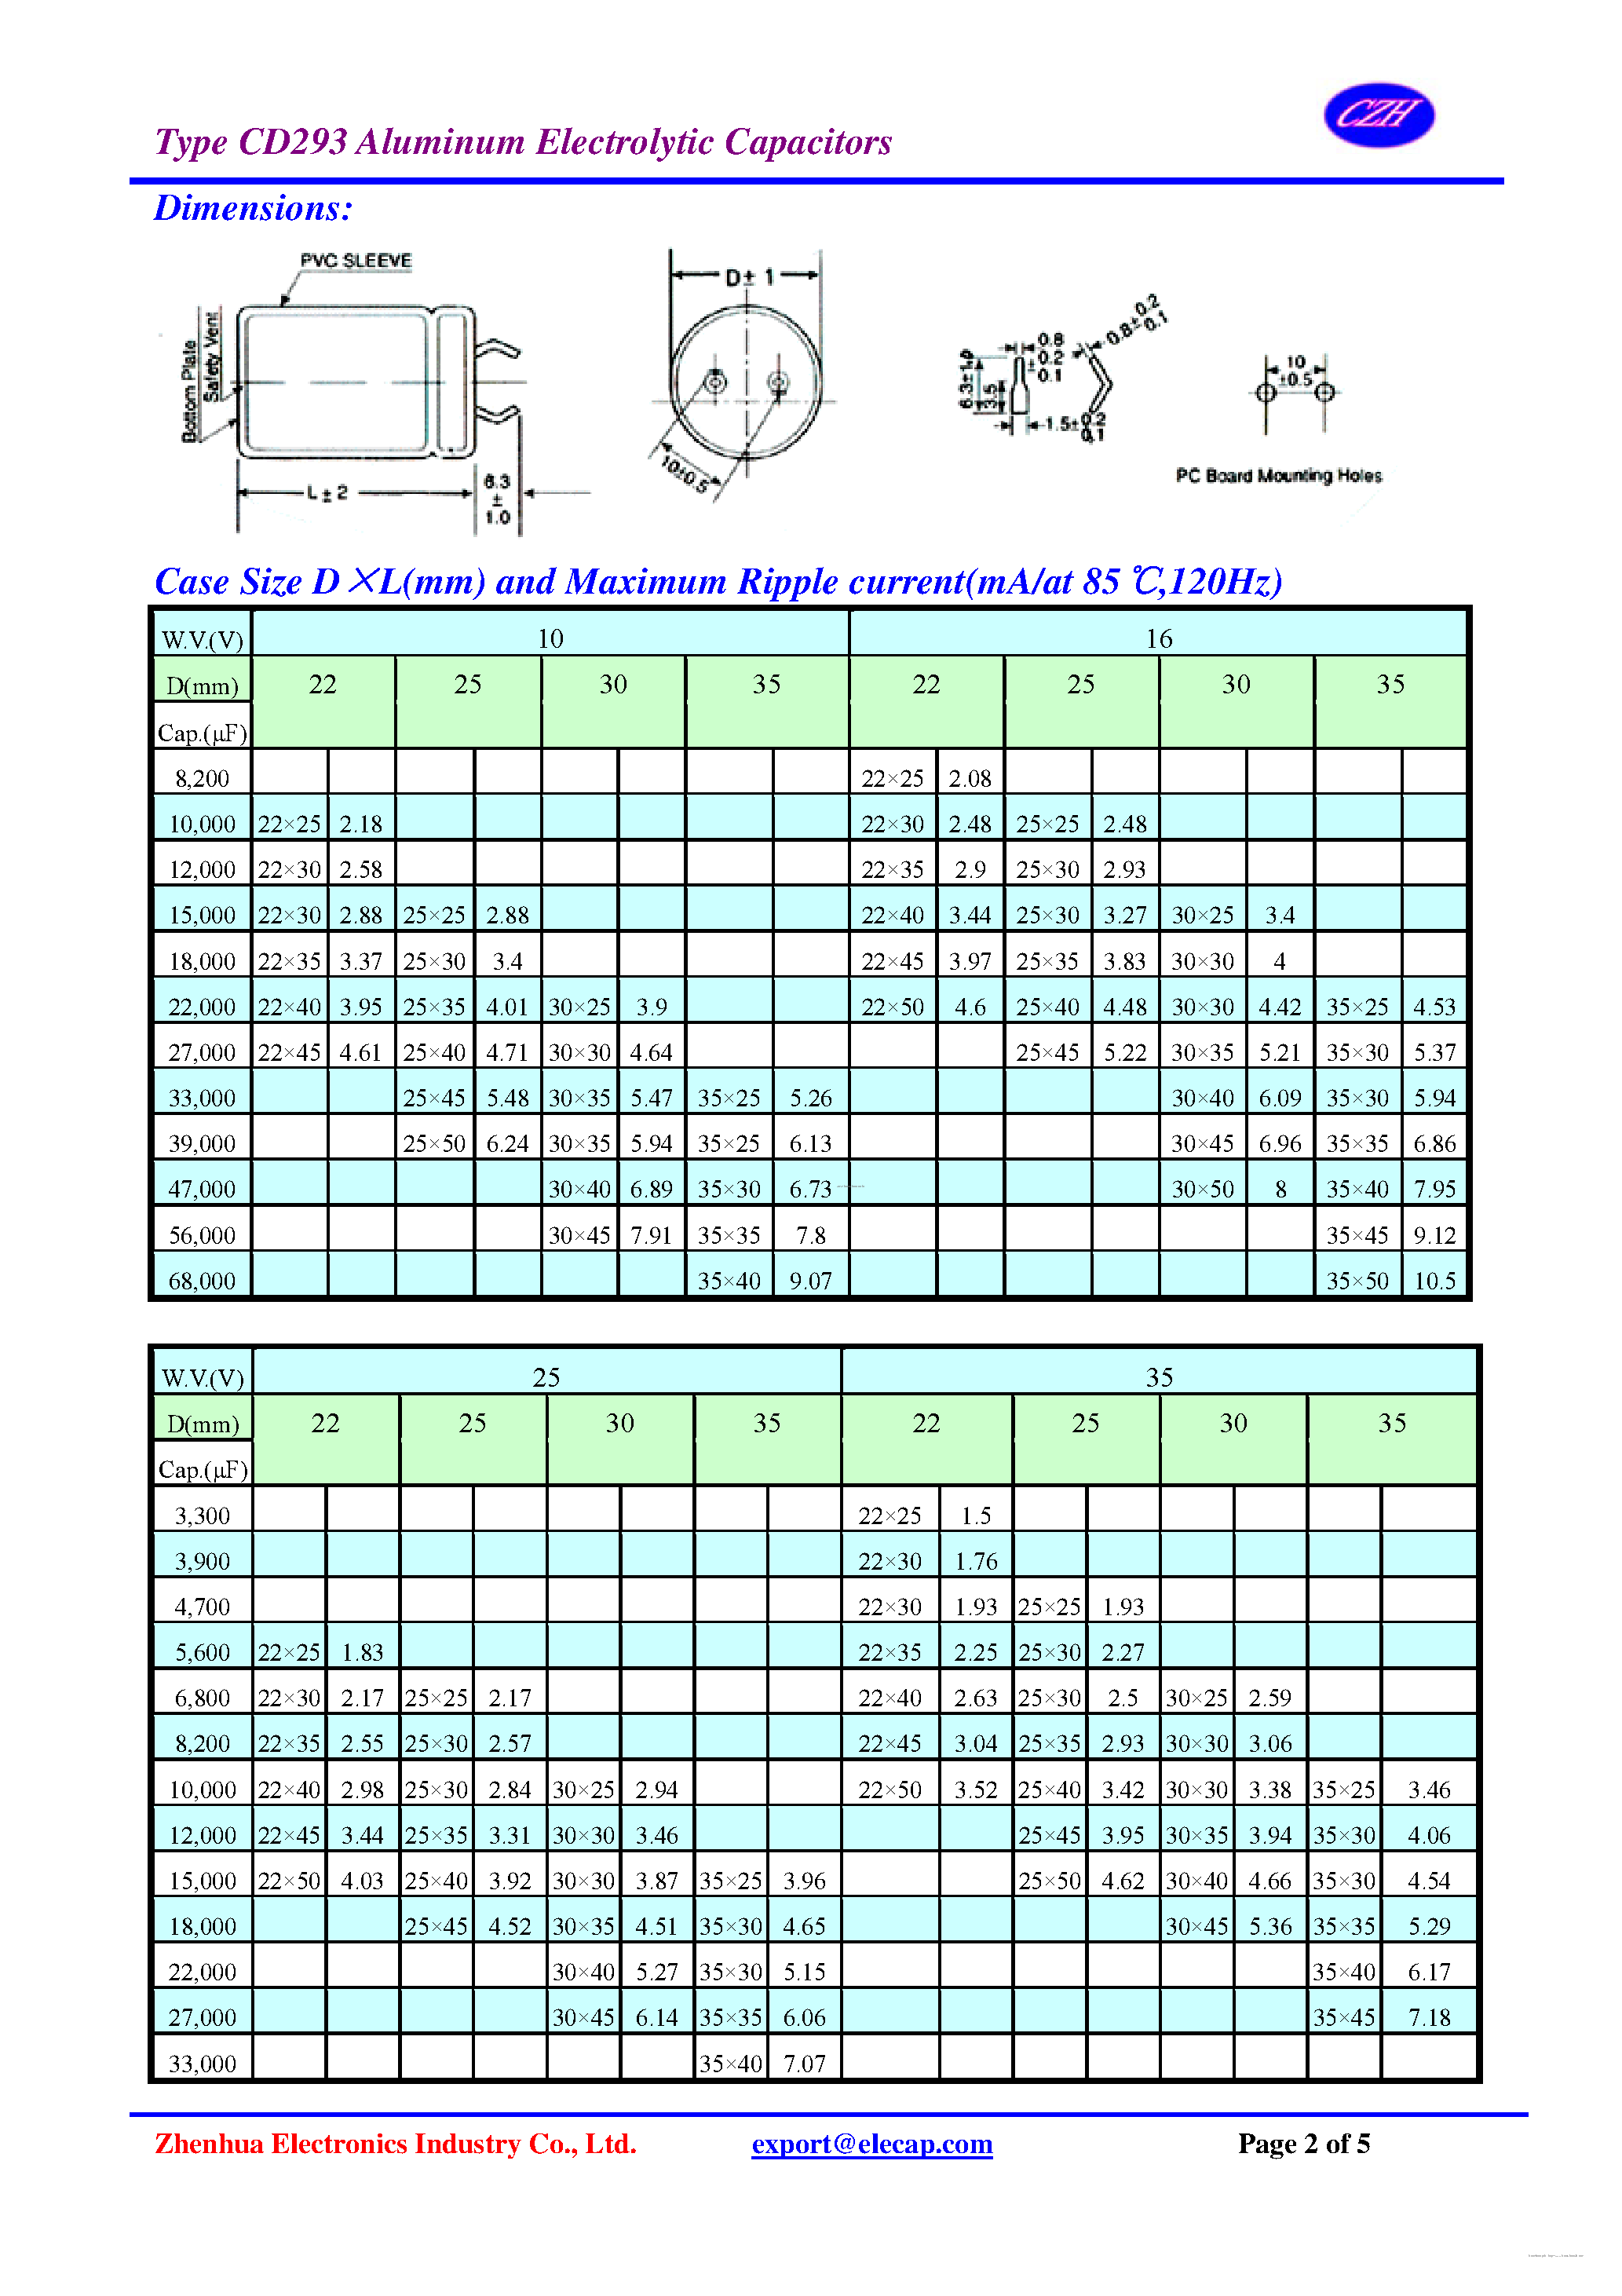 Даташит CD293 - Aluminum Electrolytic Capacitors страница 2